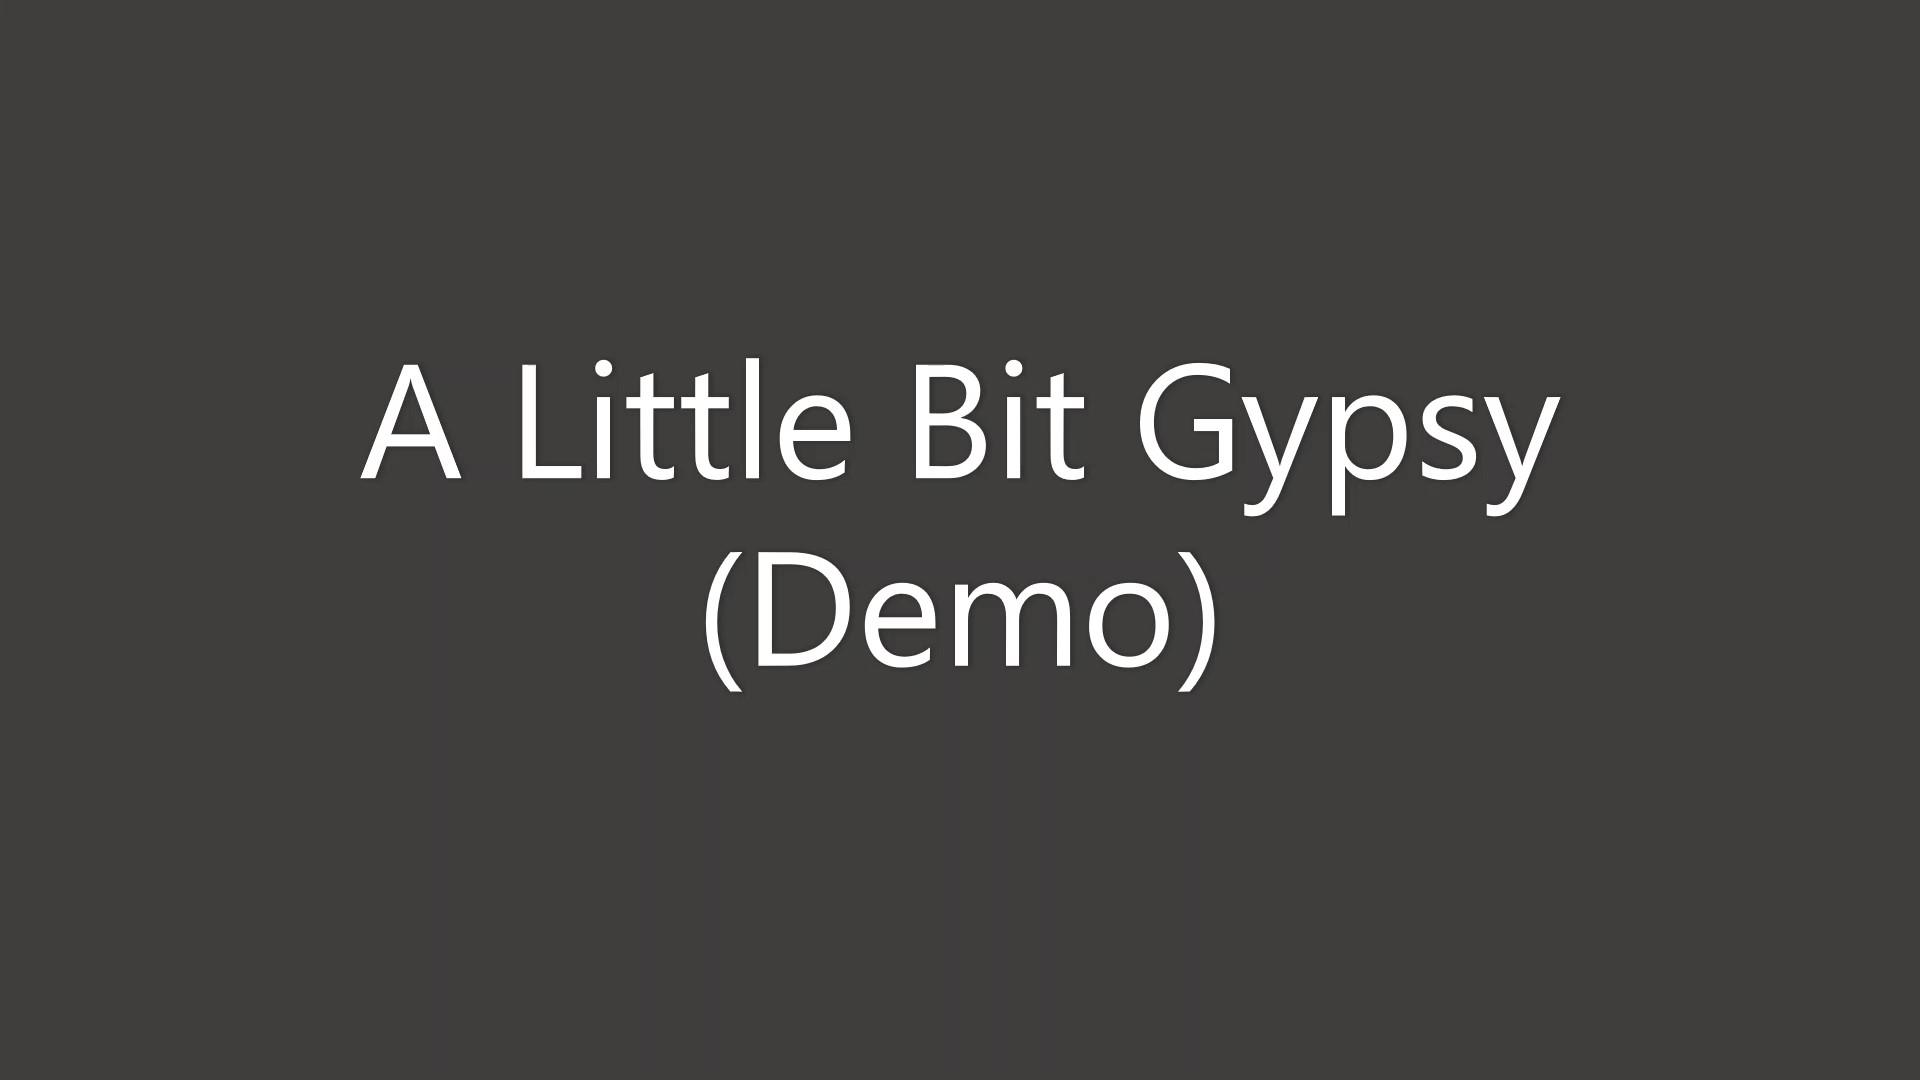 A Little Bit Gypsy Demo